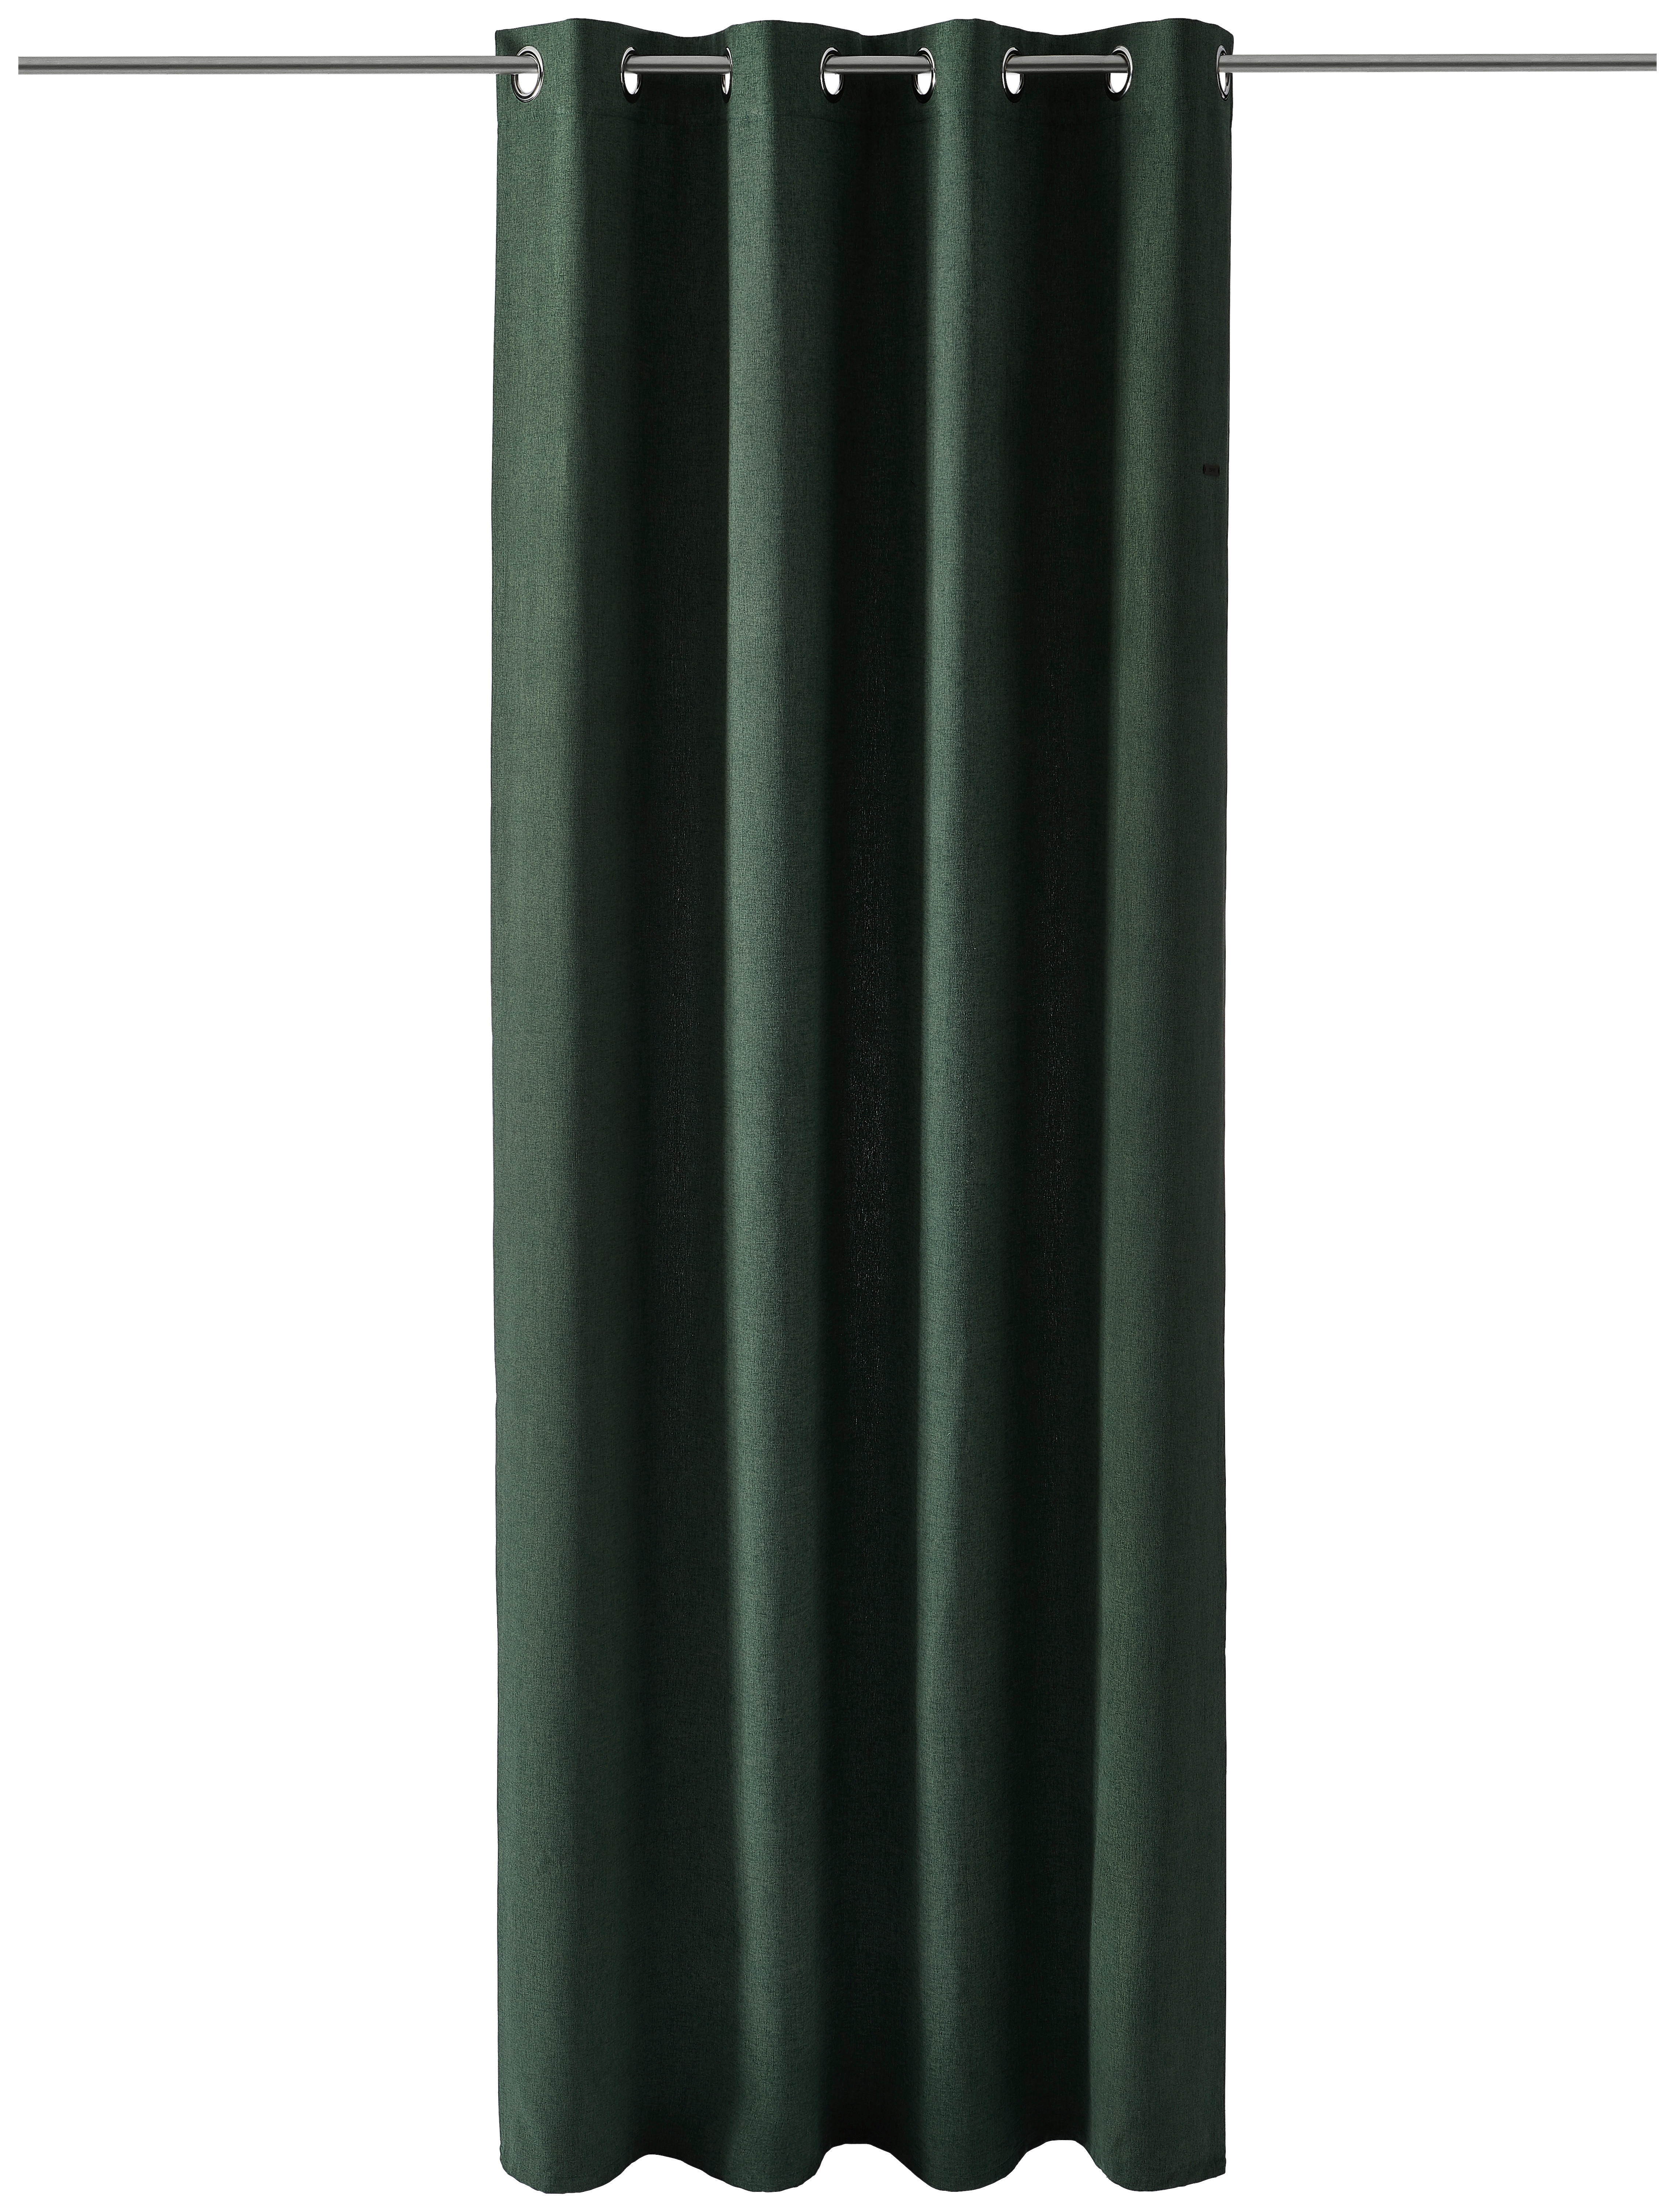 ÖSENSCHAL E-Harp blickdicht 140/250 cm   - Dunkelgrün, Basics, Textil (140/250cm) - Esprit